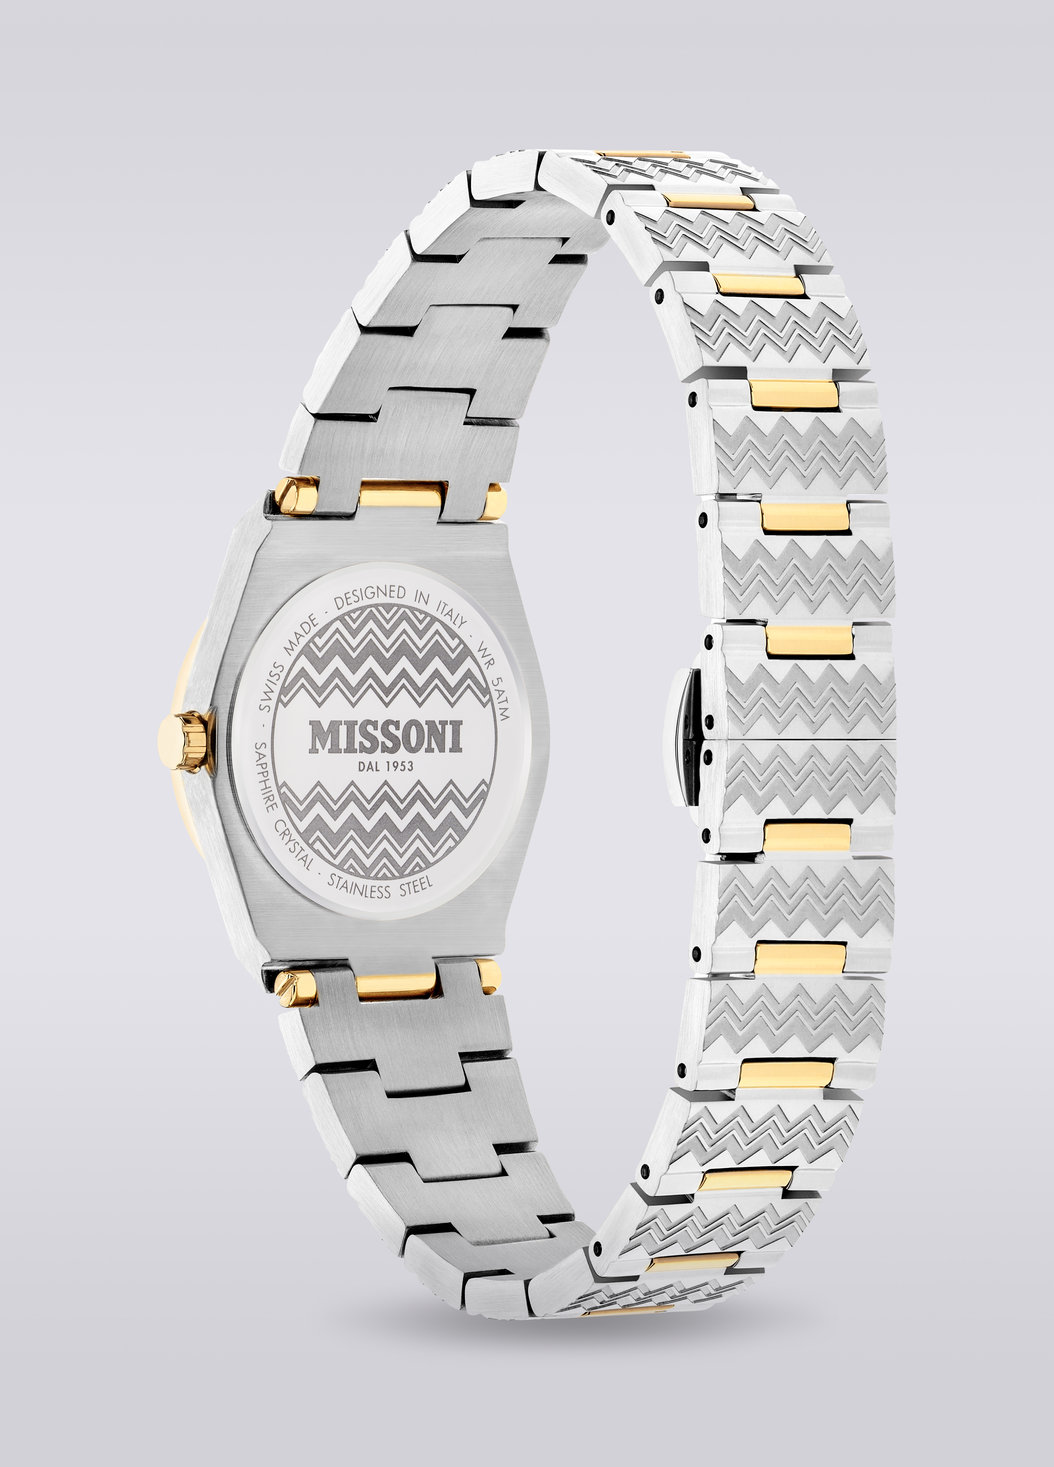 Missoni Milano, Uhr mit 29 MM Gehäusegröße, Mehrfarbig  - 8053147046167 - 2